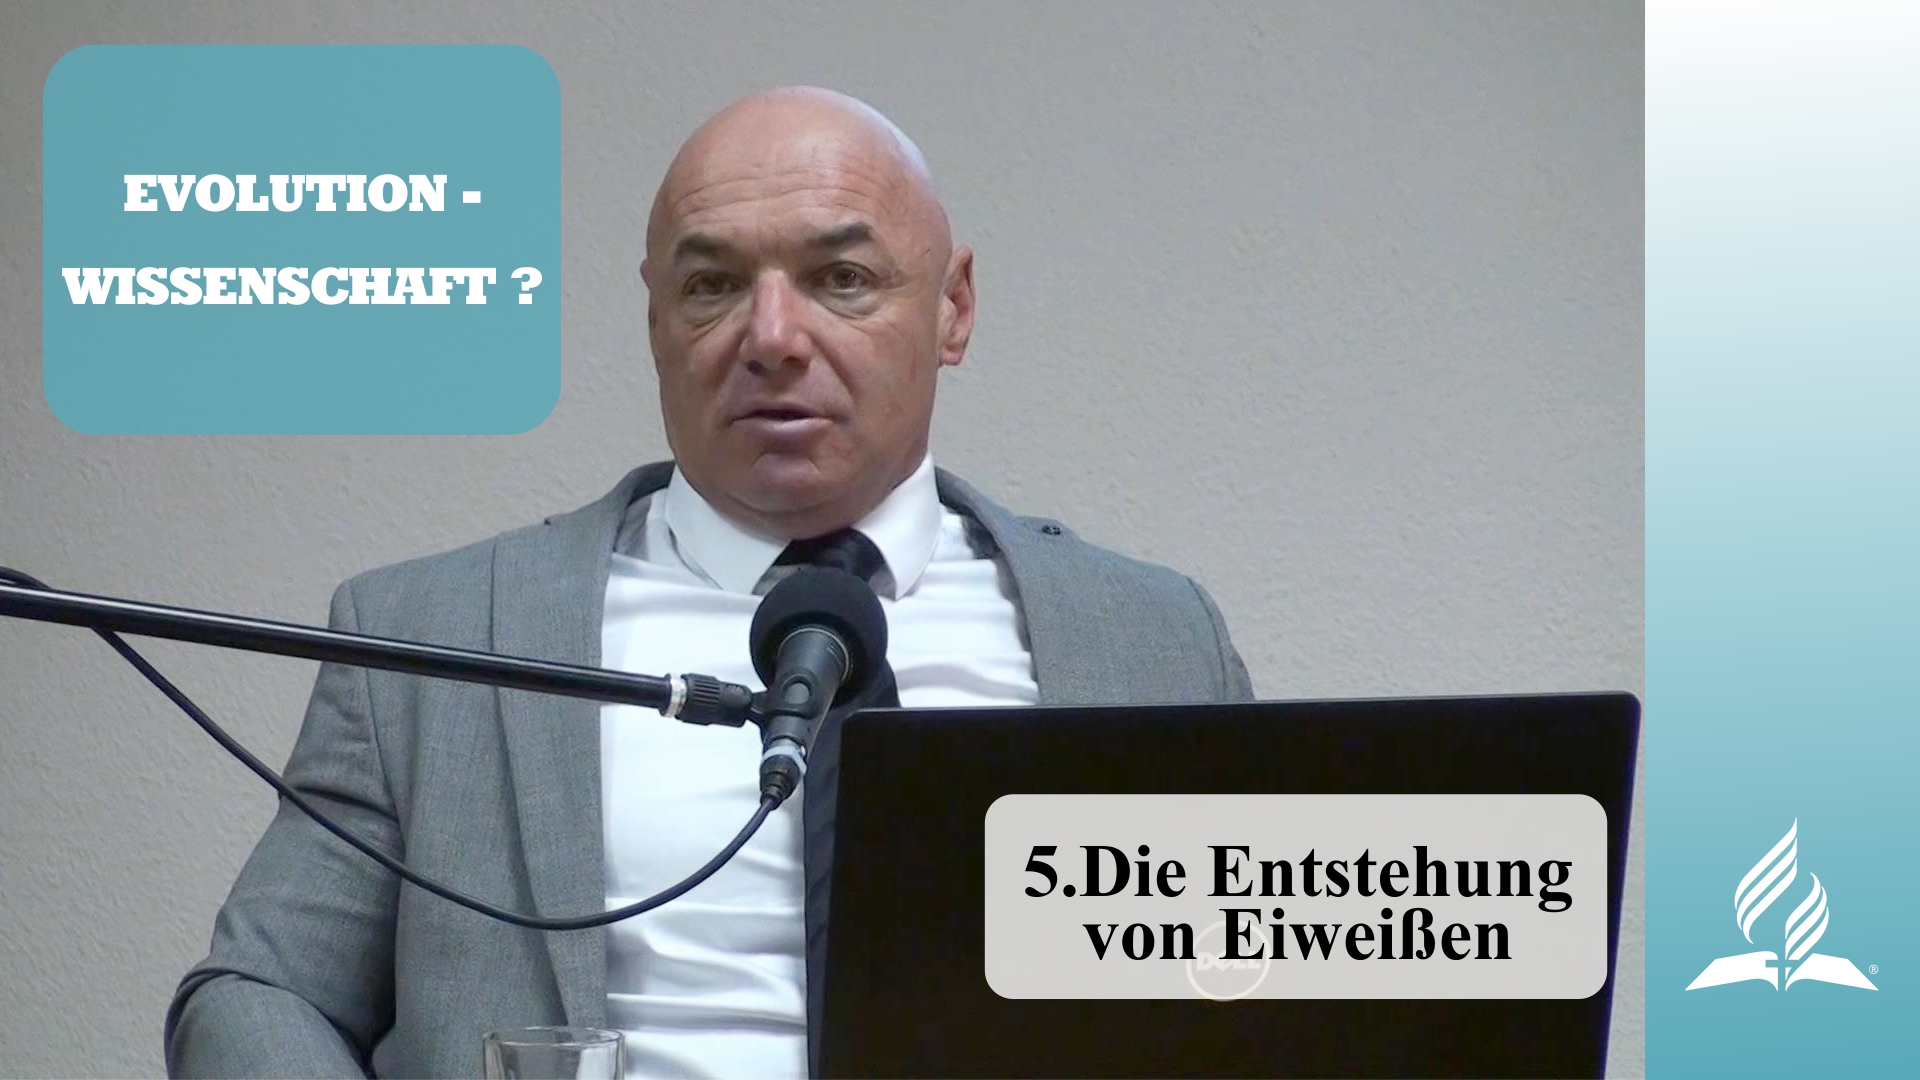 5.Die Entstehung von Eiweißen – EVOLUTION-WISSENSCHAFT? | Dr. med. univ. Klaus Gstirner